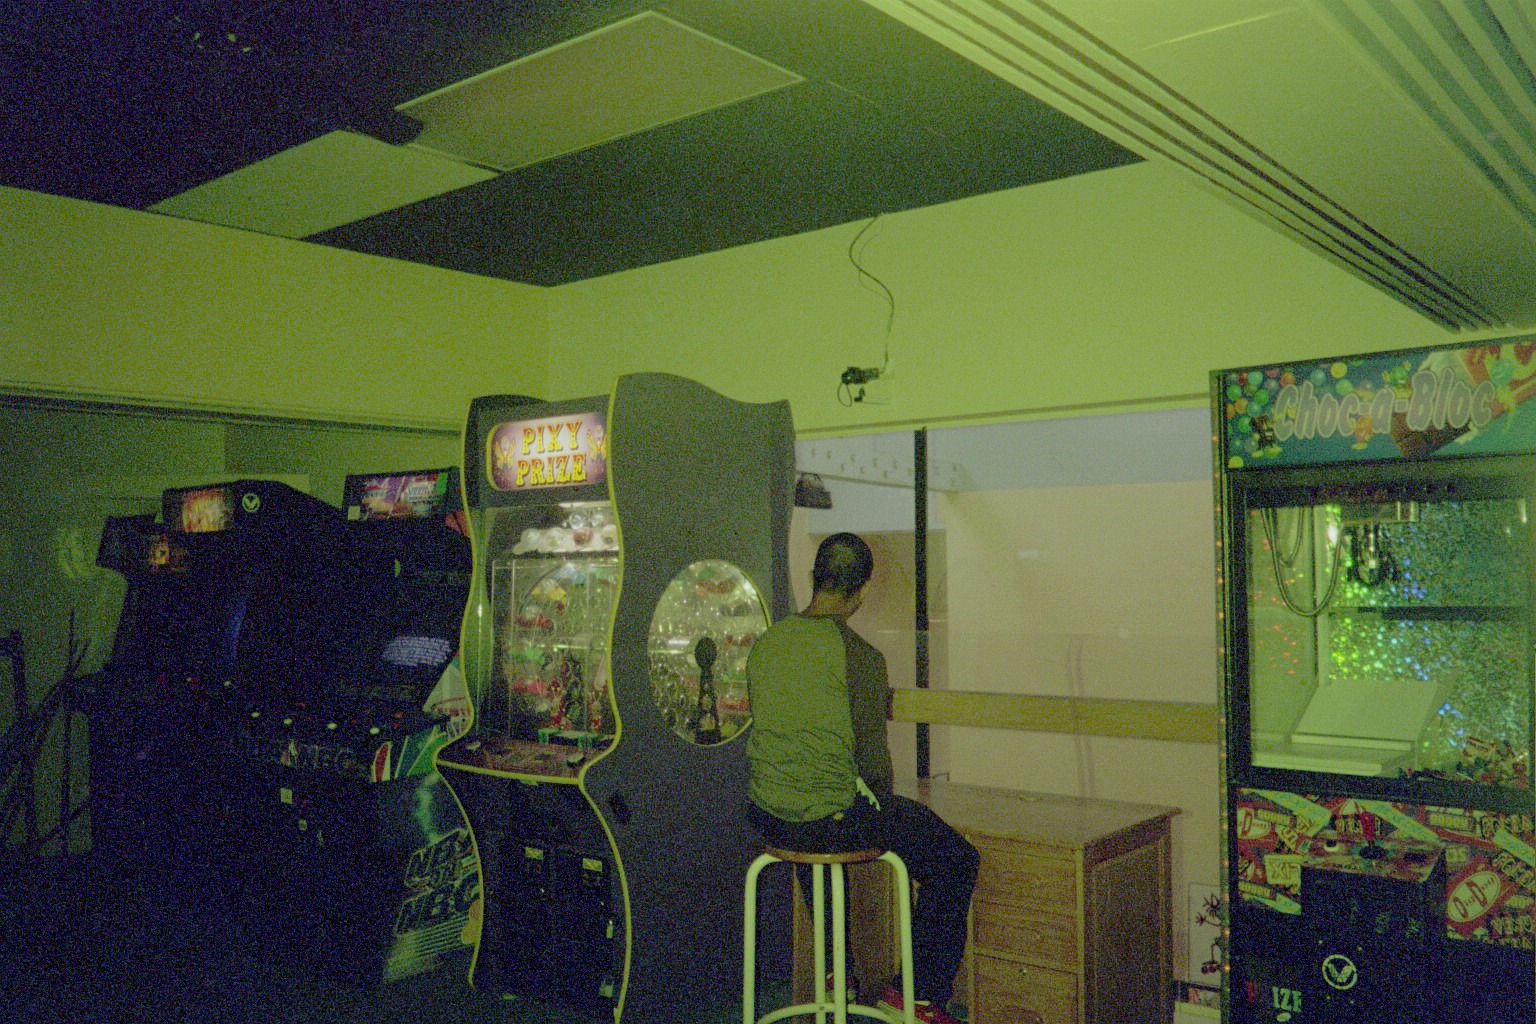 Arcade in Pismo